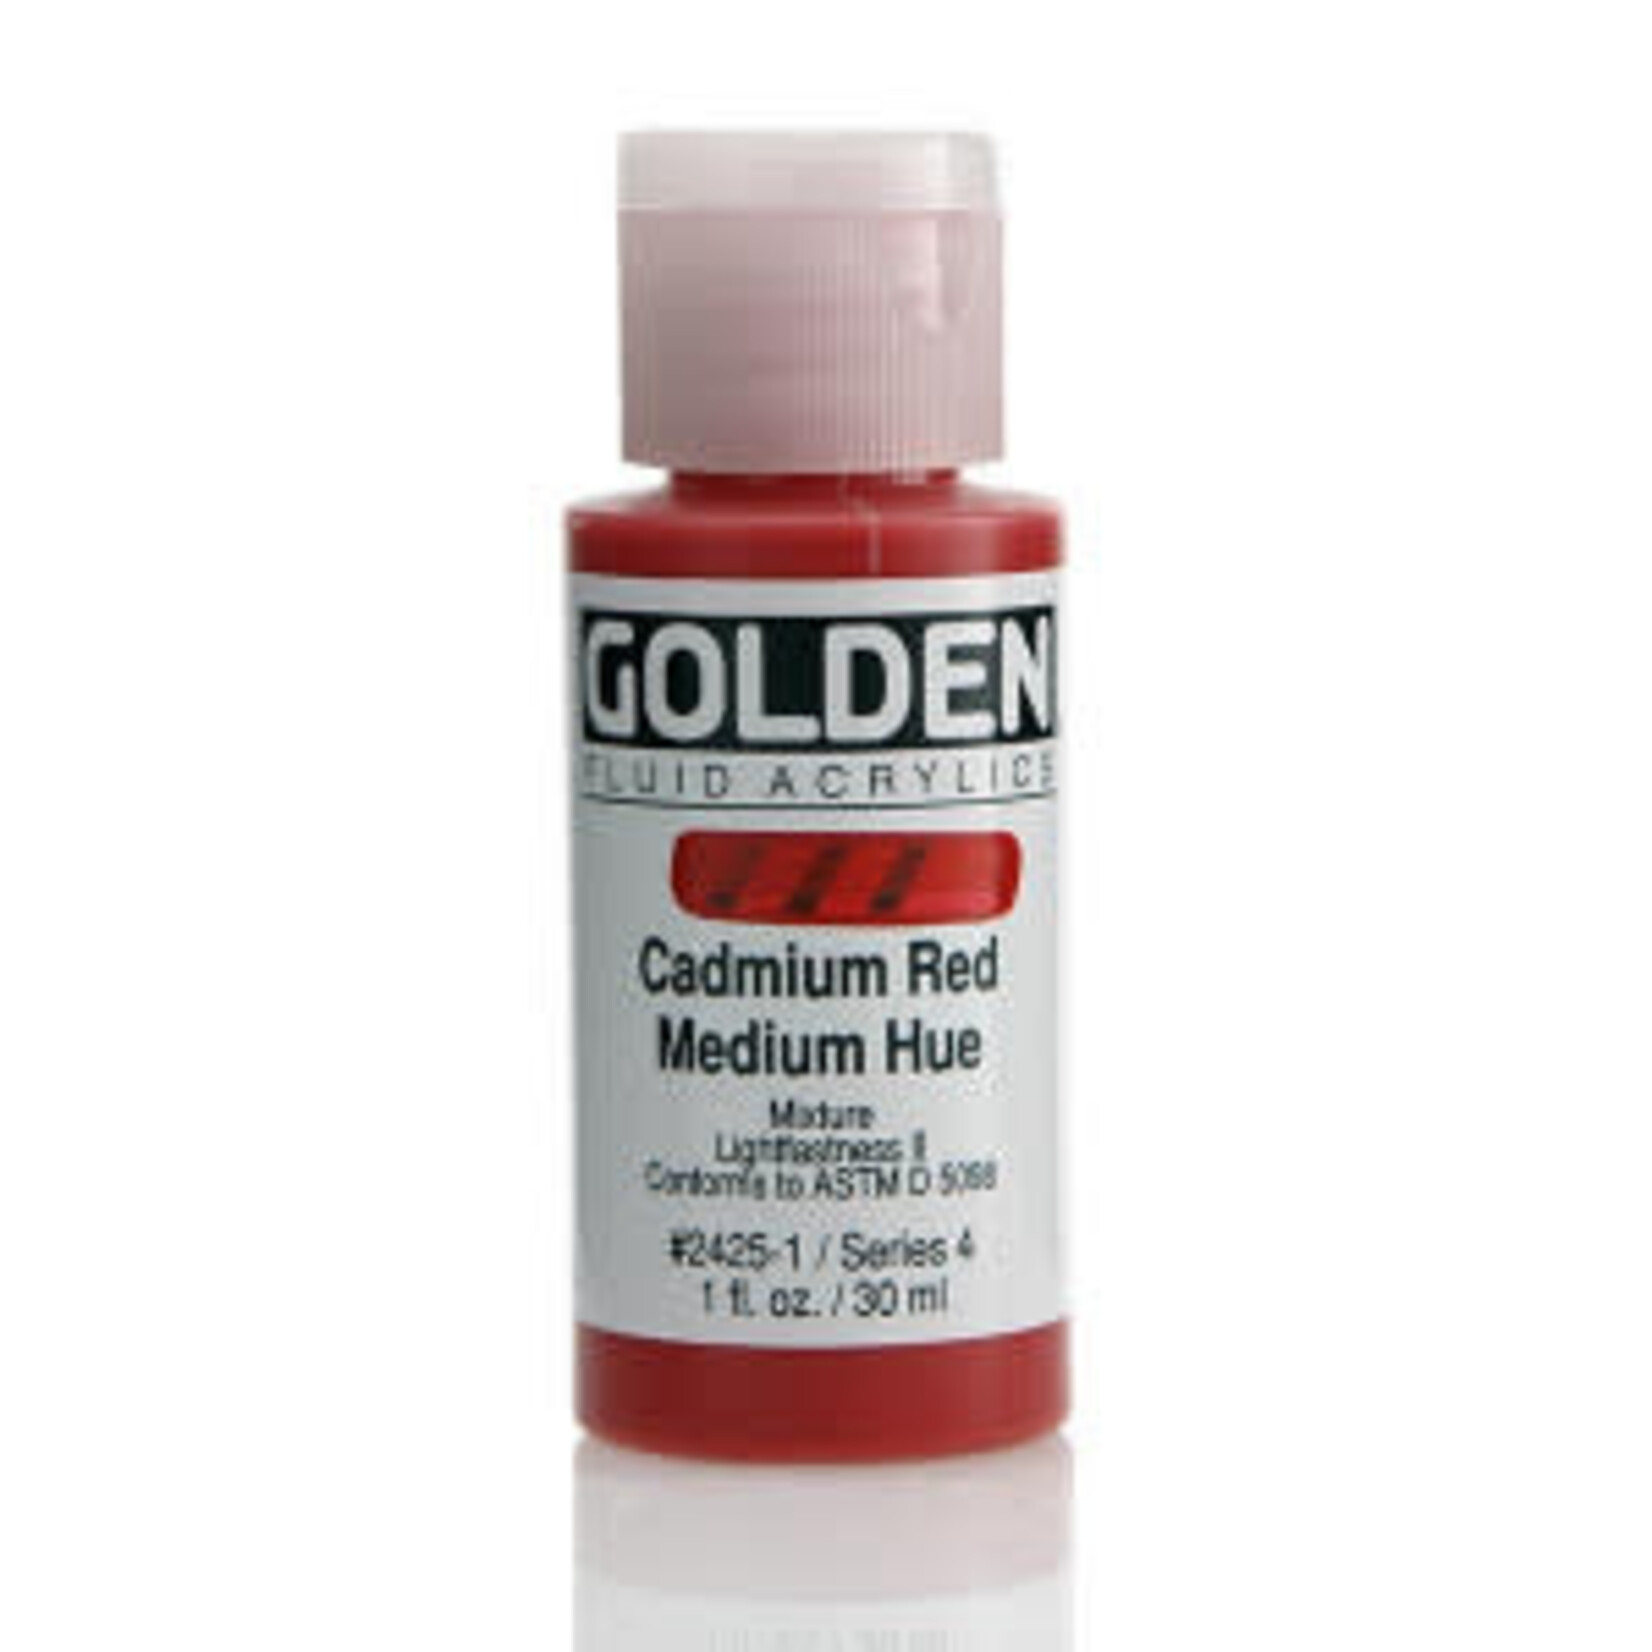 Golden Fluid Cadmium Red Medium Hue 1 oz Series 4